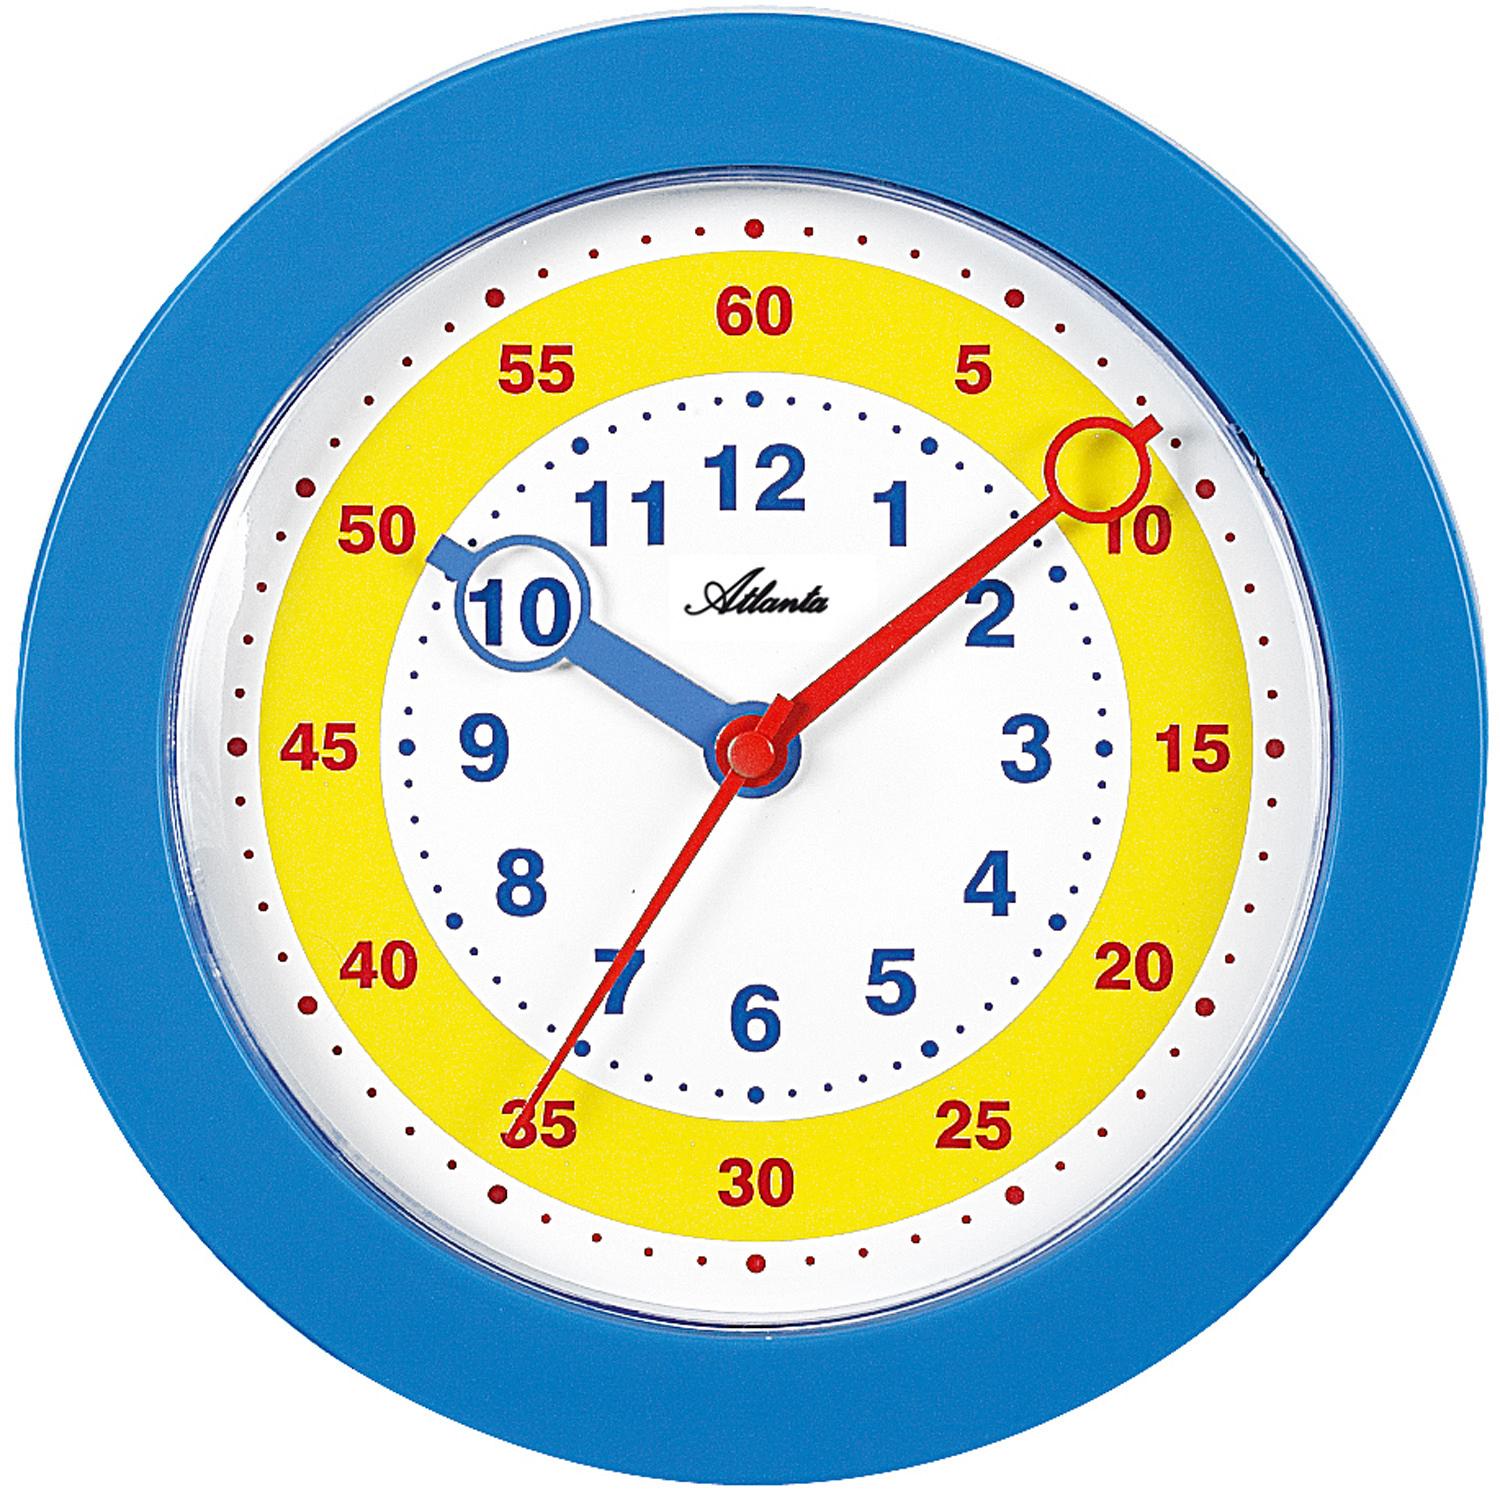 Детский циферблат. Часы циферблат для детей. Часы обучающие для детей. Часы с минутами для детей. Модель часов для детей.